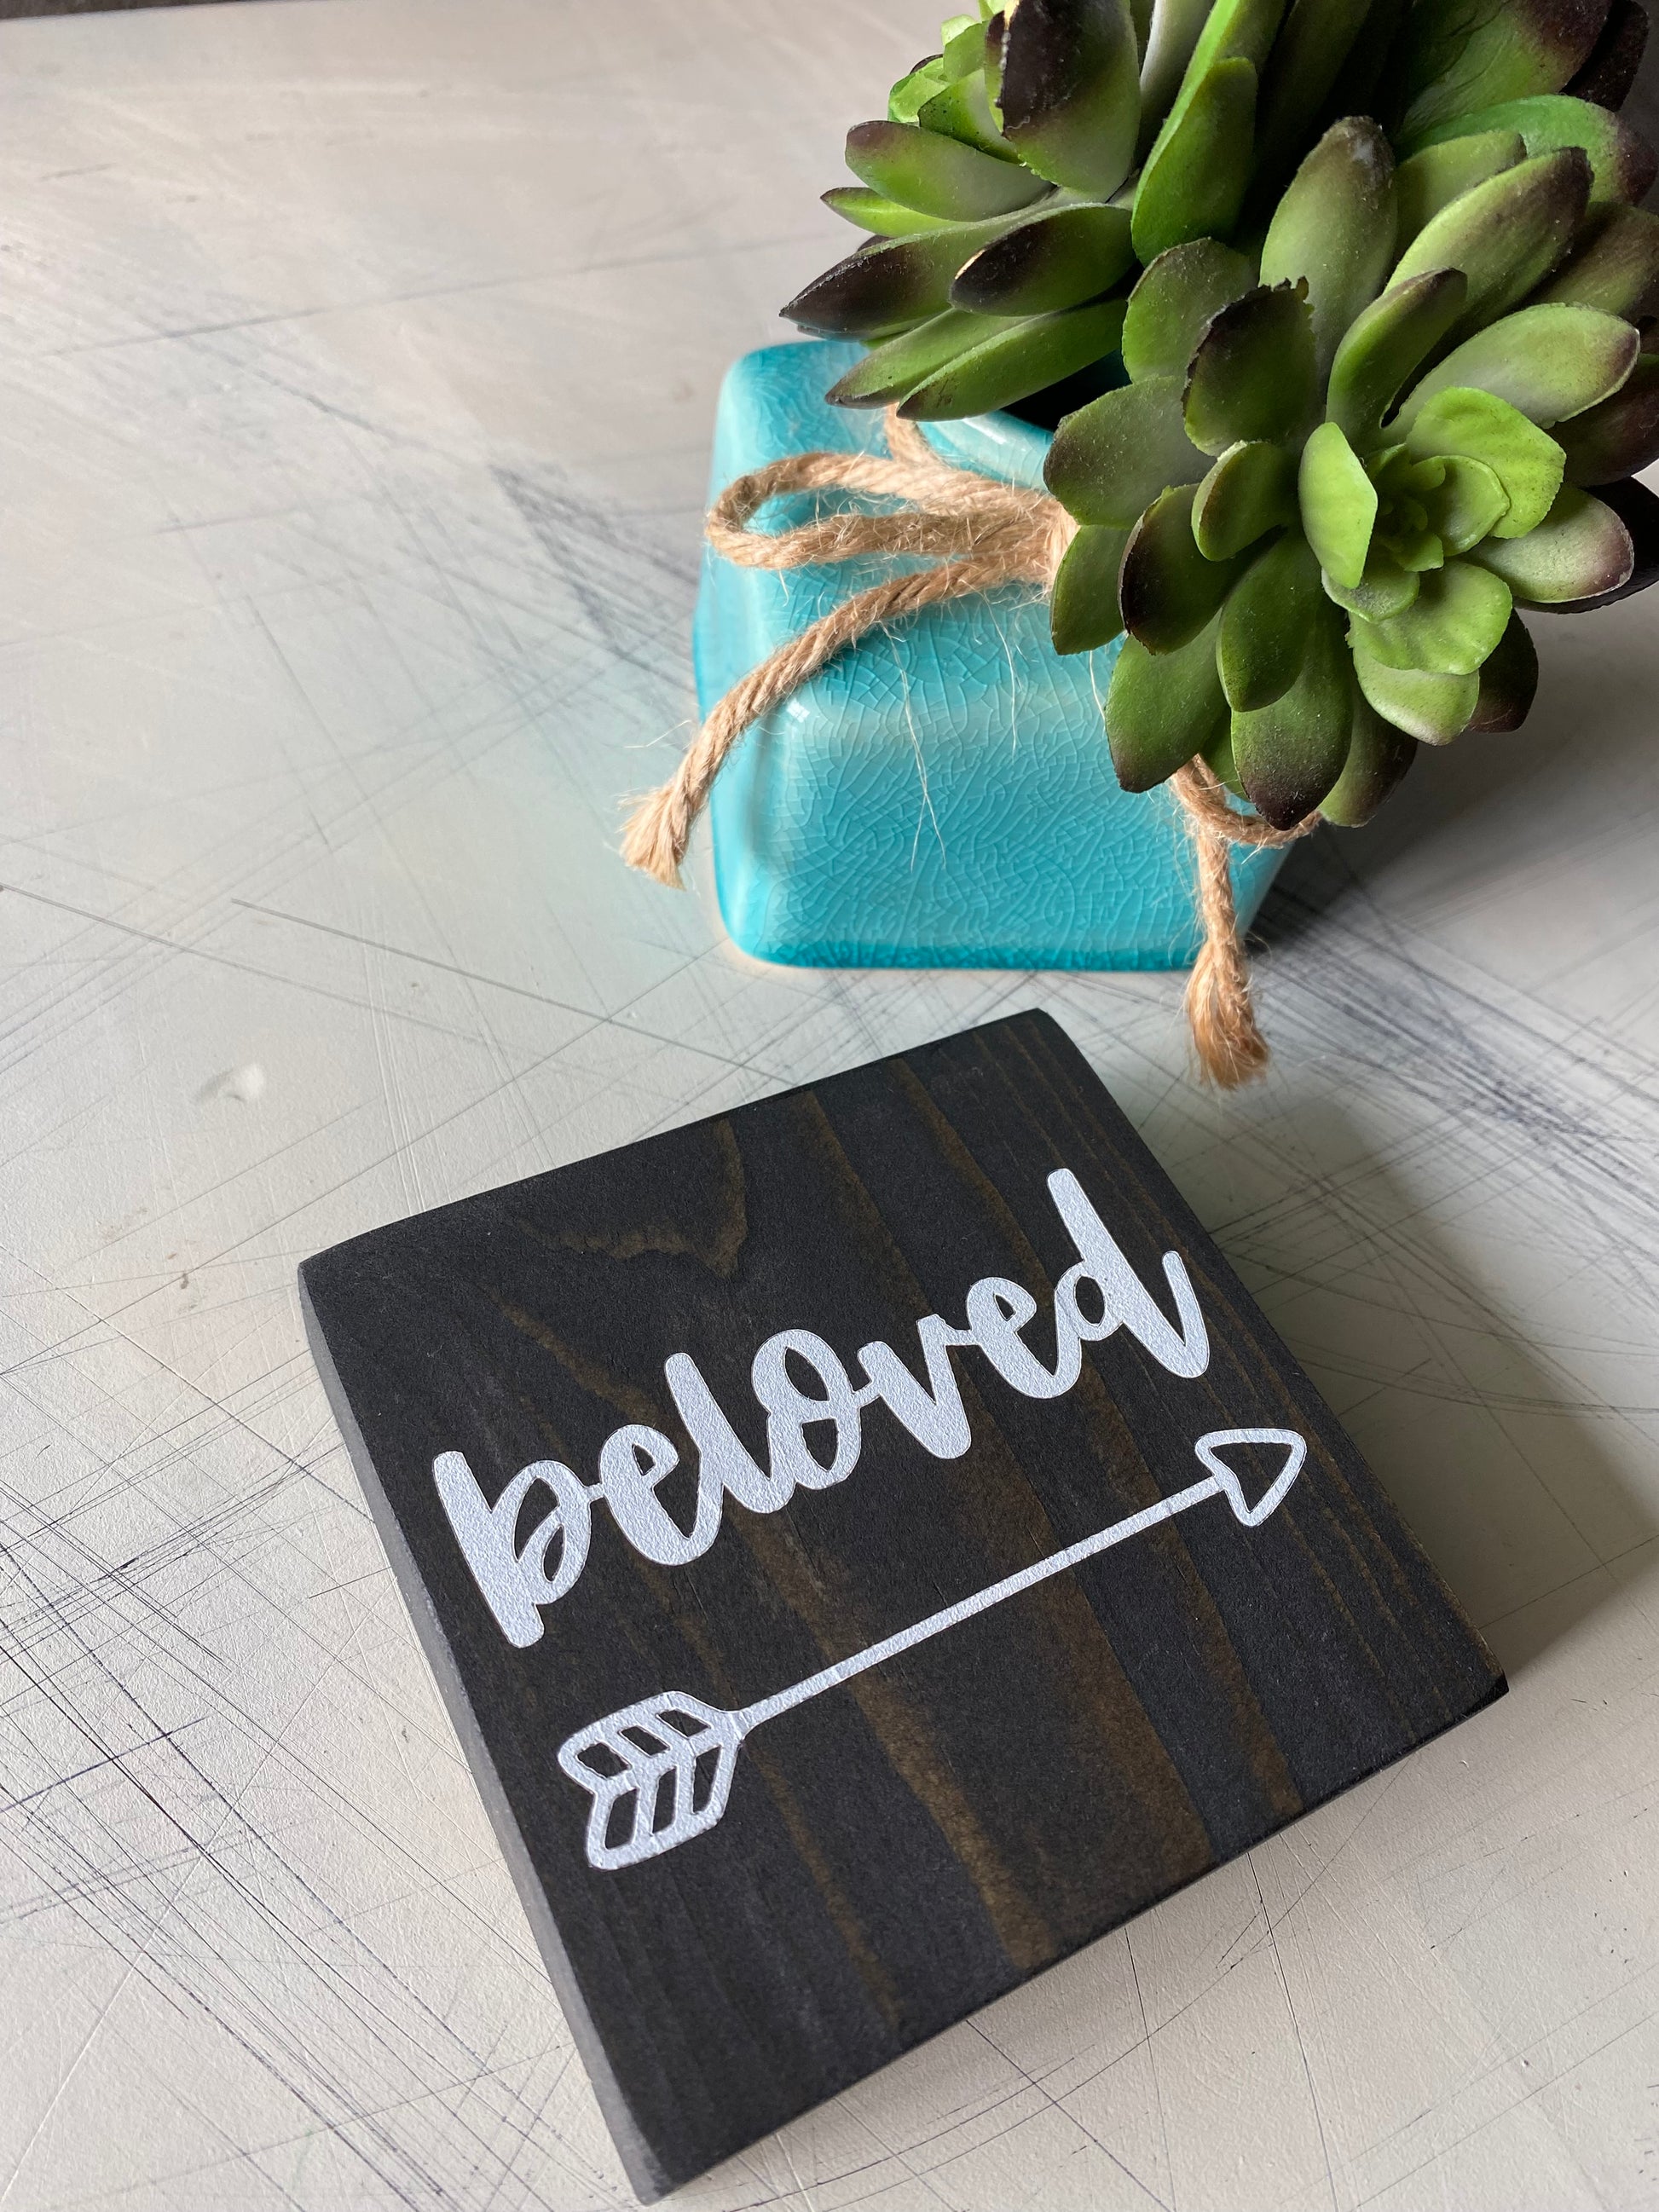 beloved - Novotny Designs handmade mini wood sign